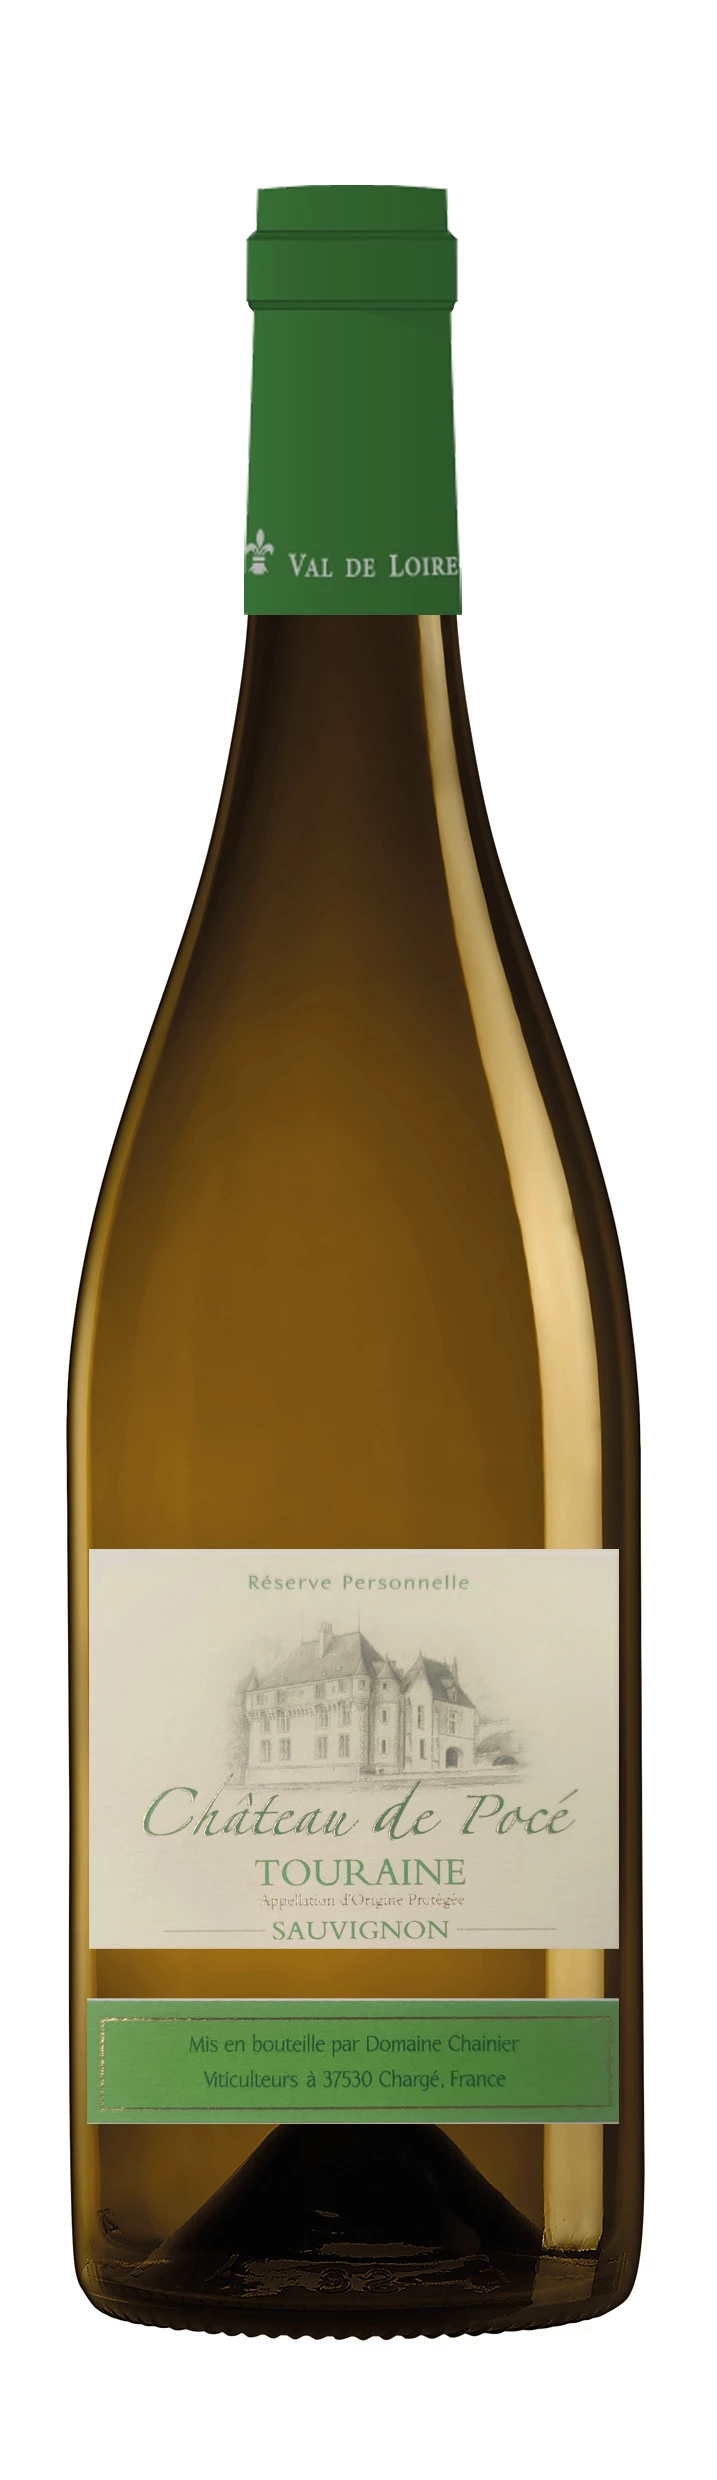 Vin Blanc Château de pocé, 12%,75cl - SAUVIGNON